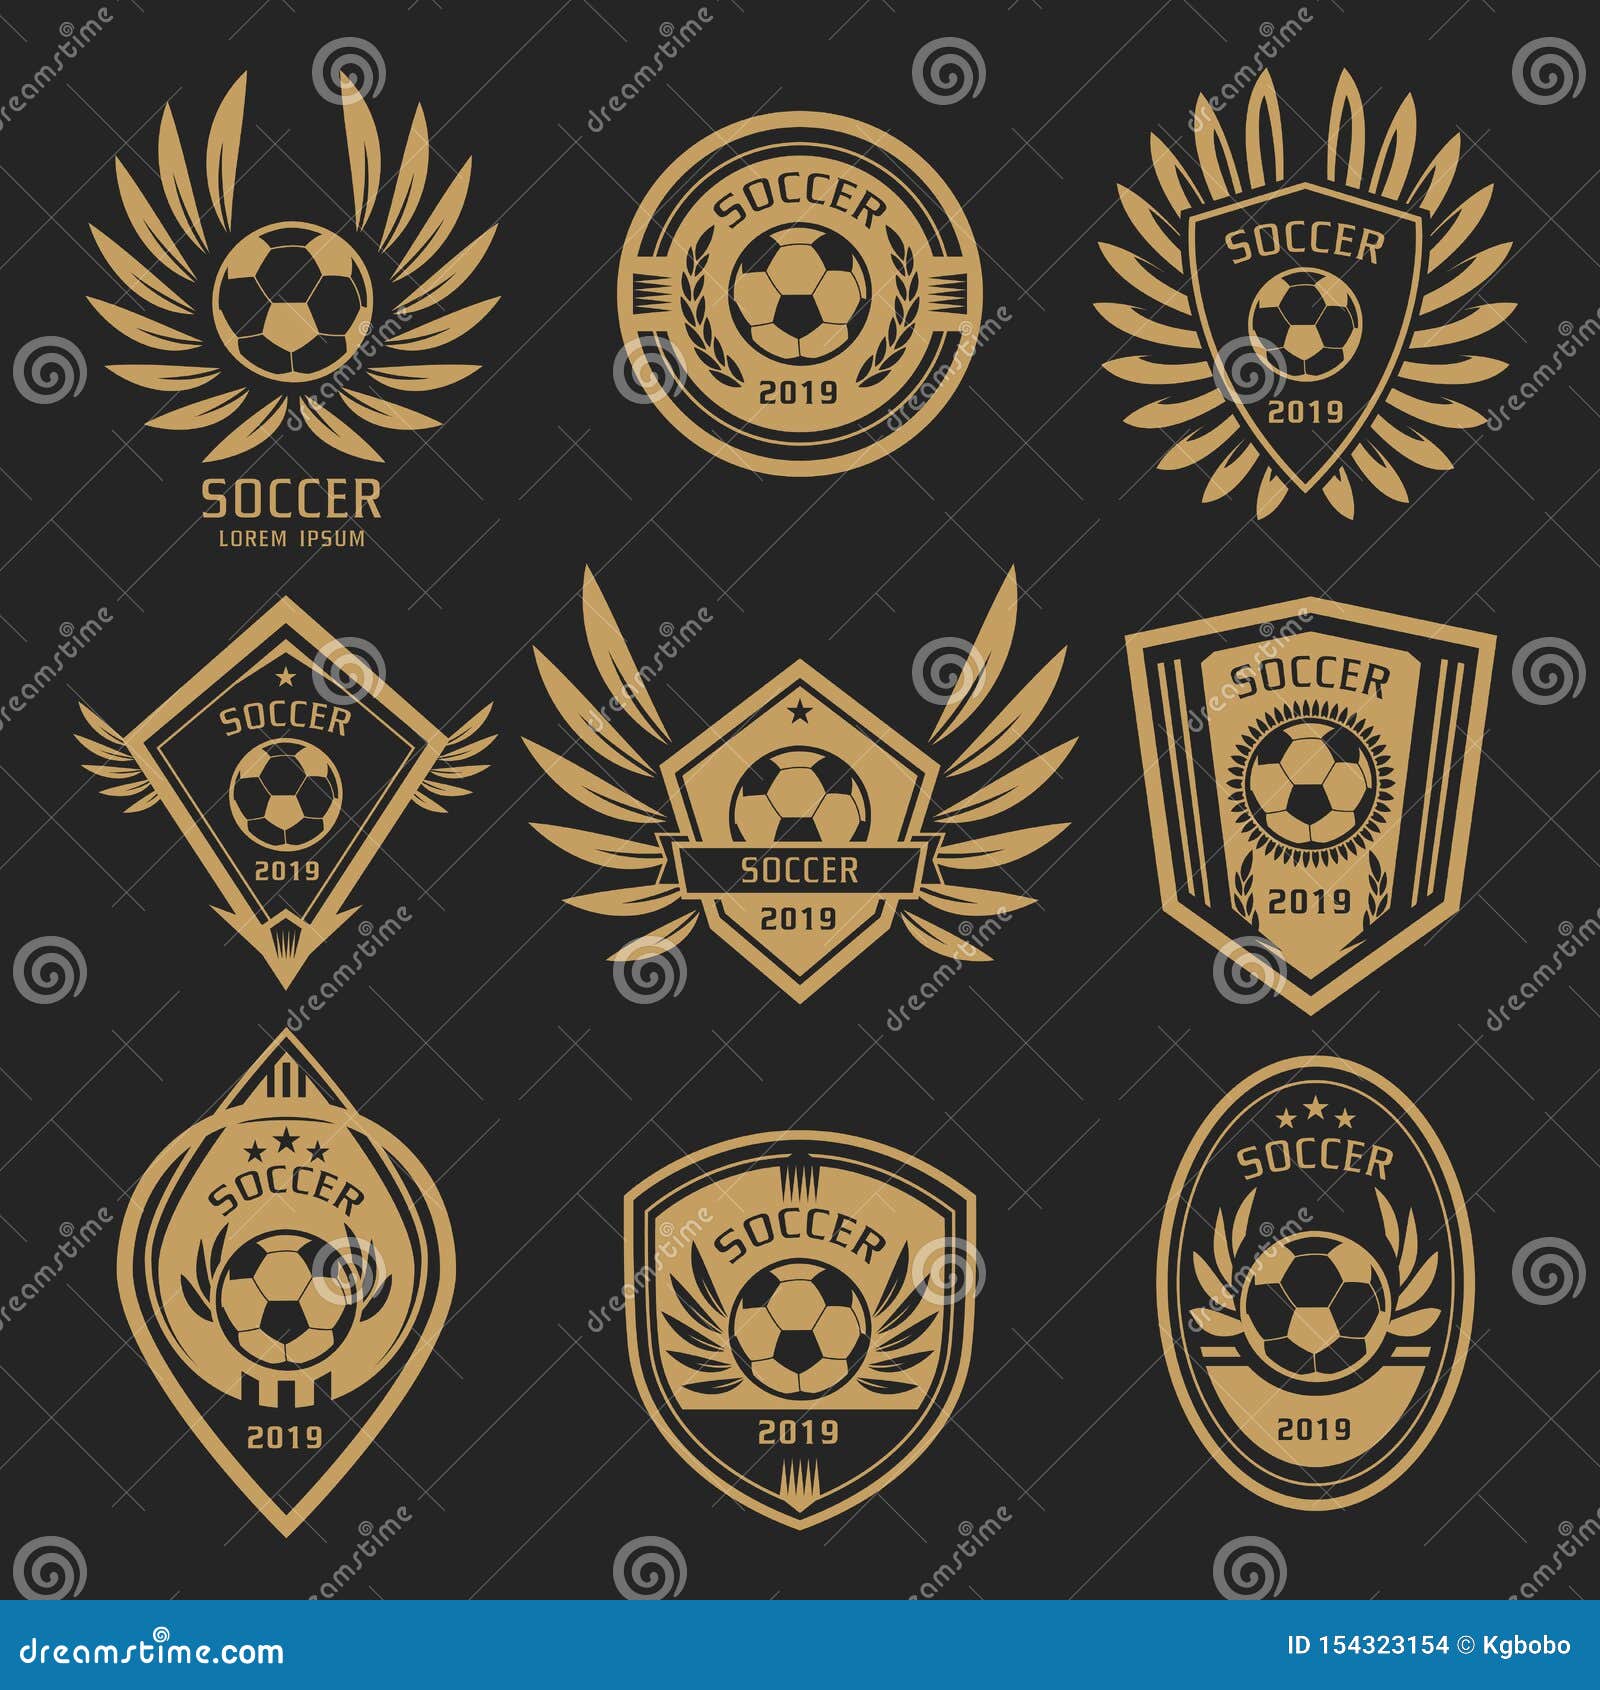 Vector quả bóng màu vàng cho logo bóng đá sẽ là lựa chọn hoàn hảo cho những ai yêu thích môn thể thao này. Với chất lượng cao và độ phân giải tuyệt vời, những hình ảnh này sẽ giúp tăng tính chuyên nghiệp cho Logo của bạn. Đừng bỏ lỡ, hãy vào xem ngay!